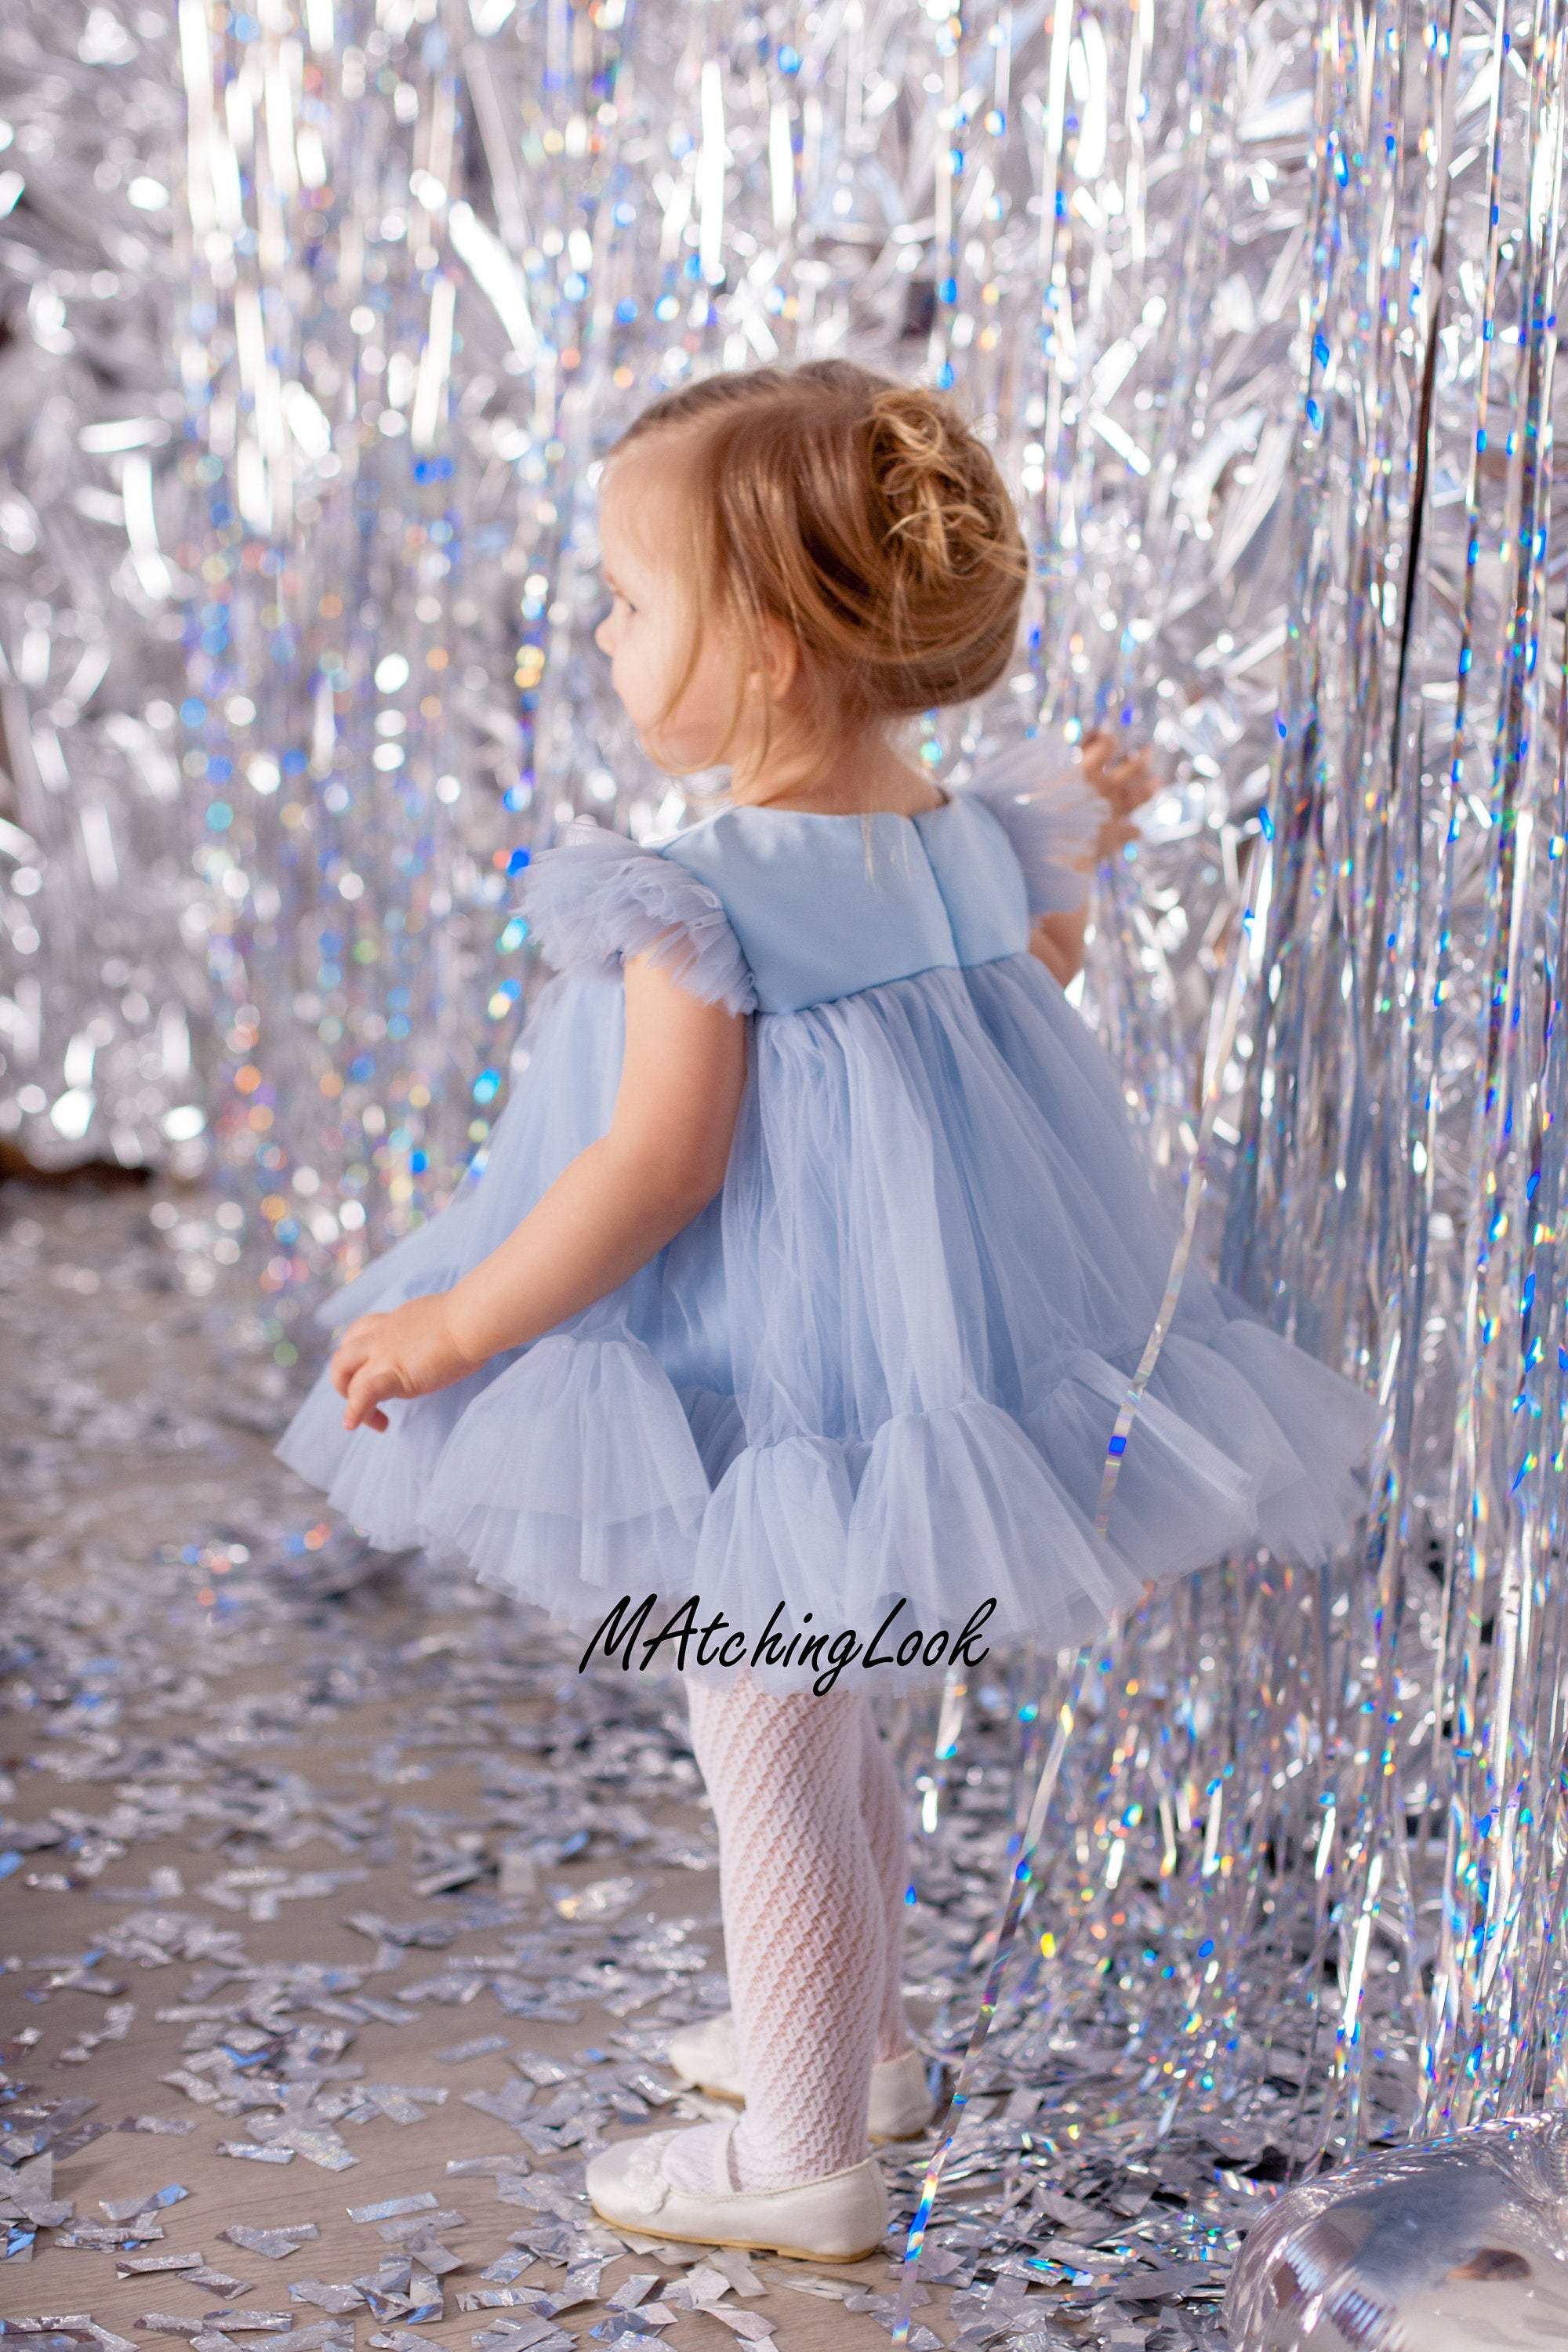 Vintage Royal Blue Smocked Dresses for Girls Baby Toddler Spring Summer  Clothes | eBay